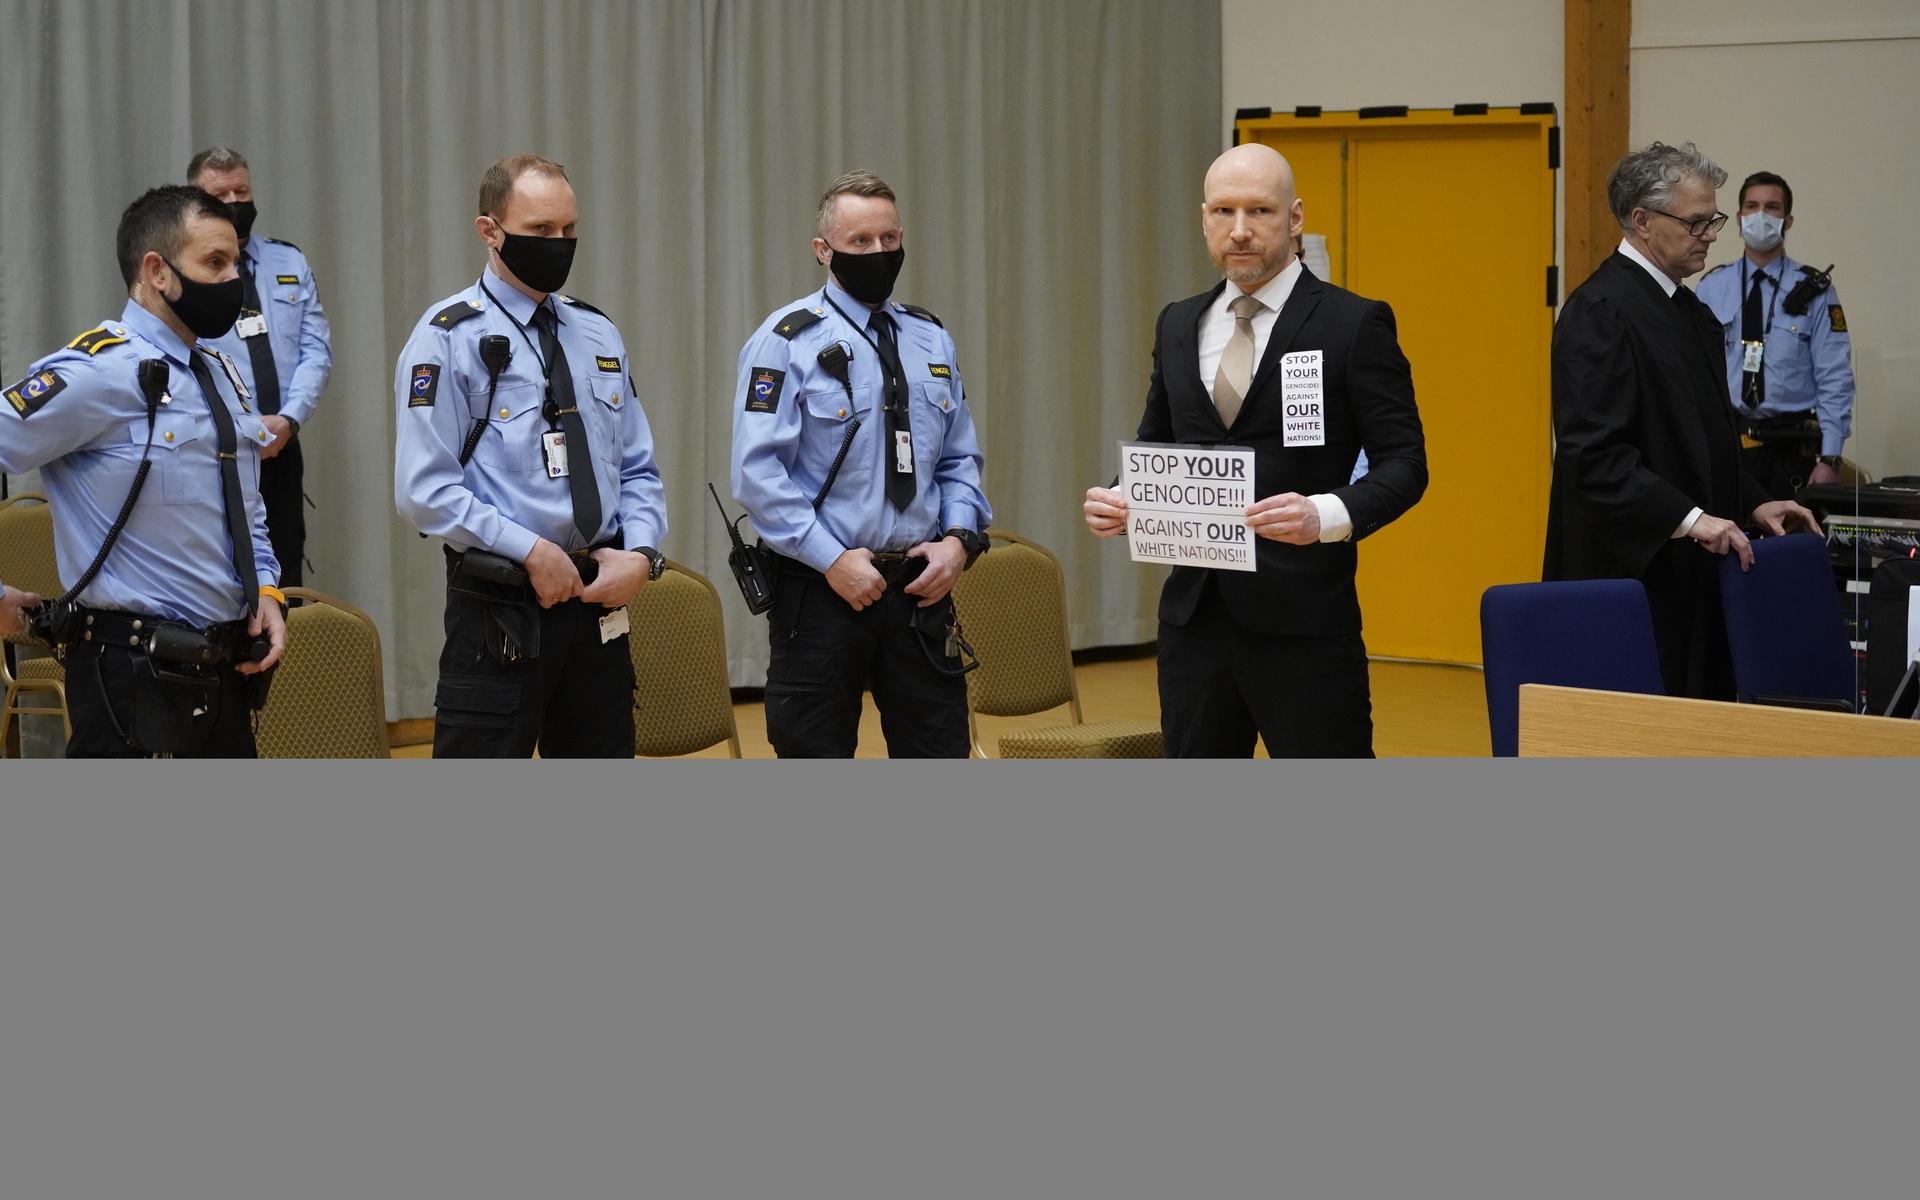 När Breivik anlände till rättssalen hade han med sig skyltar med nazistiska budskap och gjorde nazistiska hälsningar mot journalisterna och domaren, rapporterar NRK.